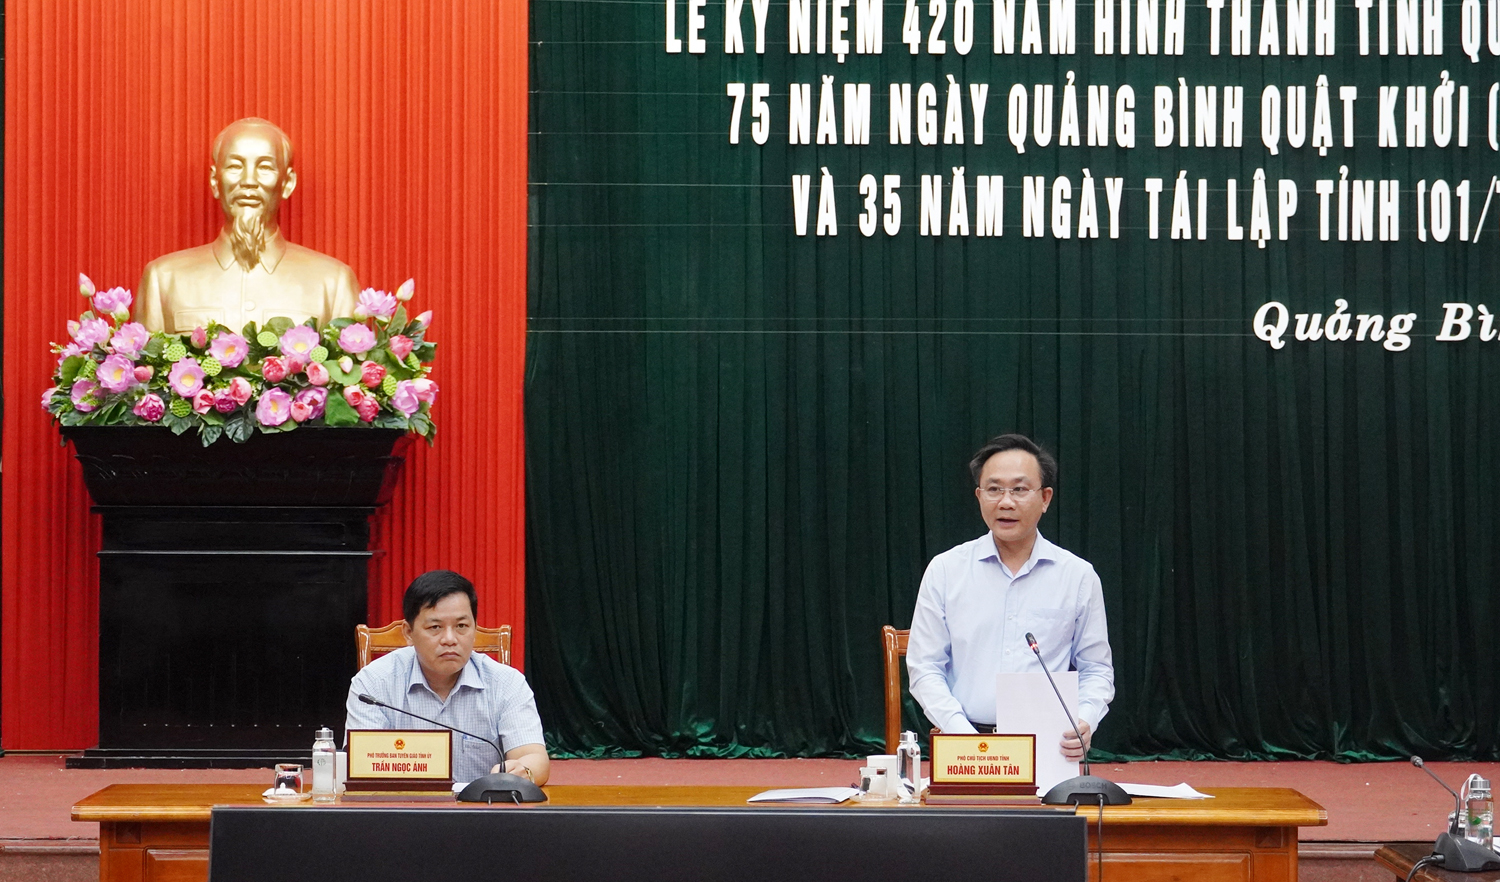 Đồng chí Phó Chủ tịch UBND tỉnh Hoàng Xuân Tân chủ trì buổi họp báo. 